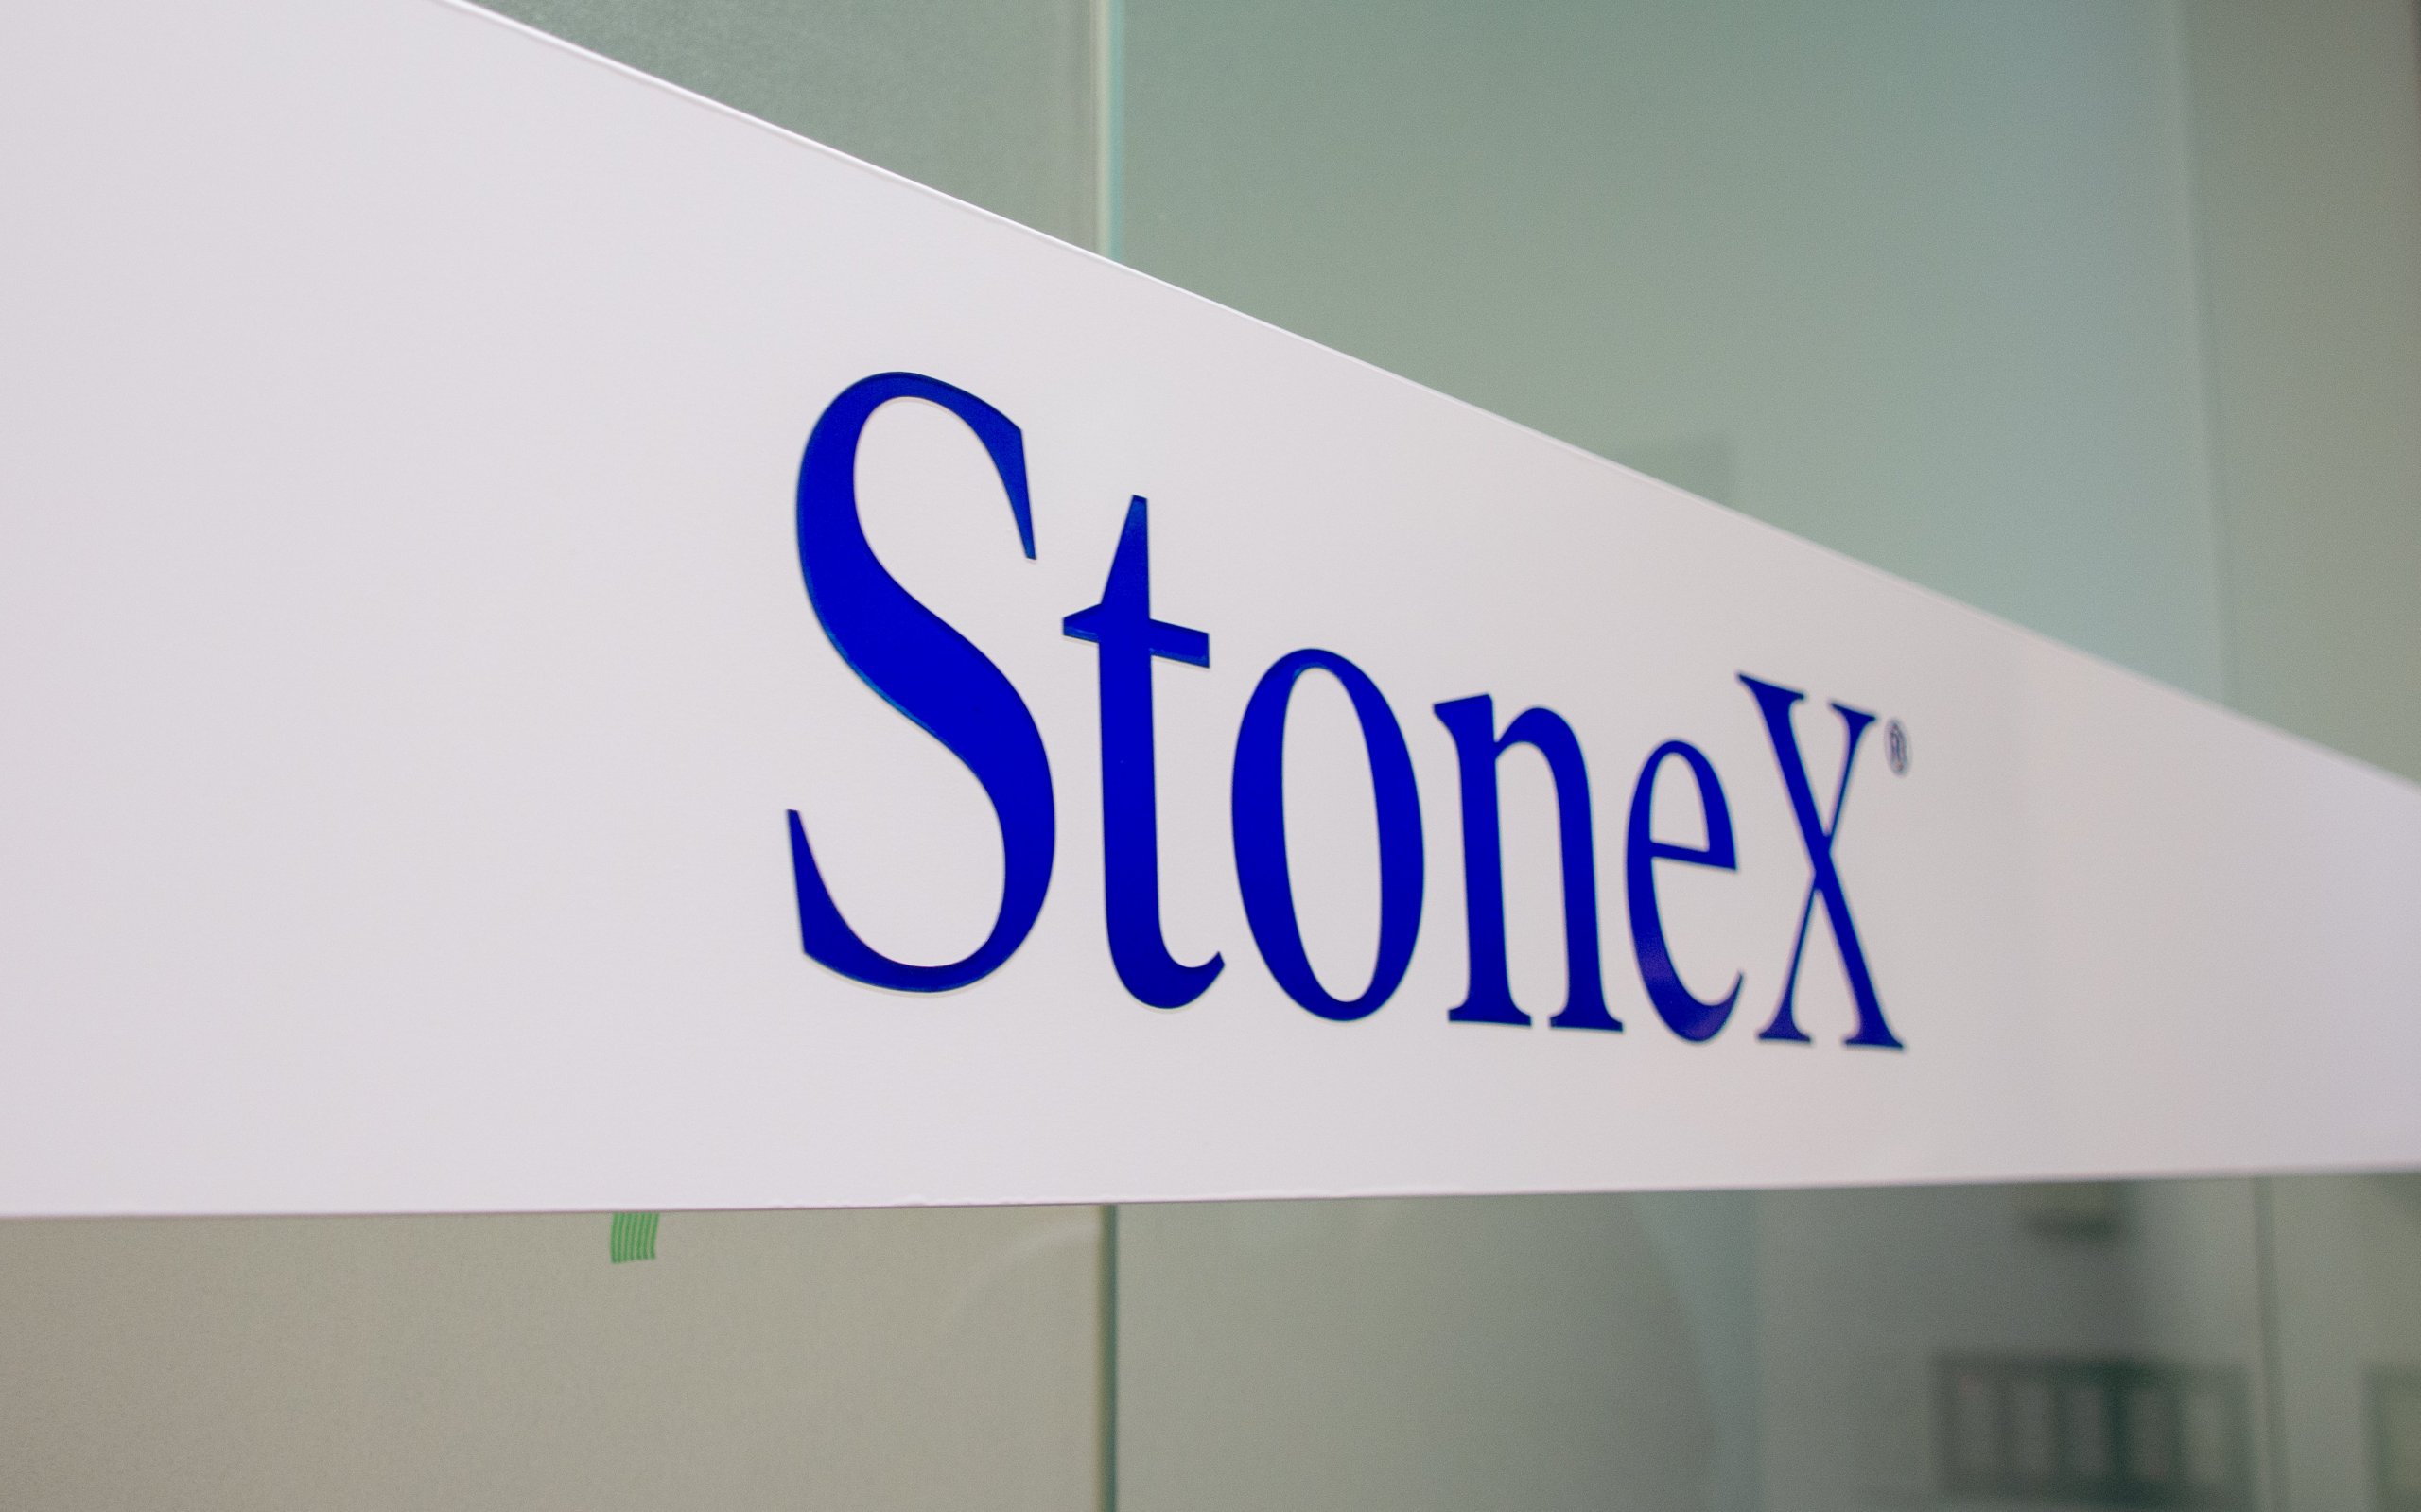 StoneX証券の会社概要について解説するイメージ